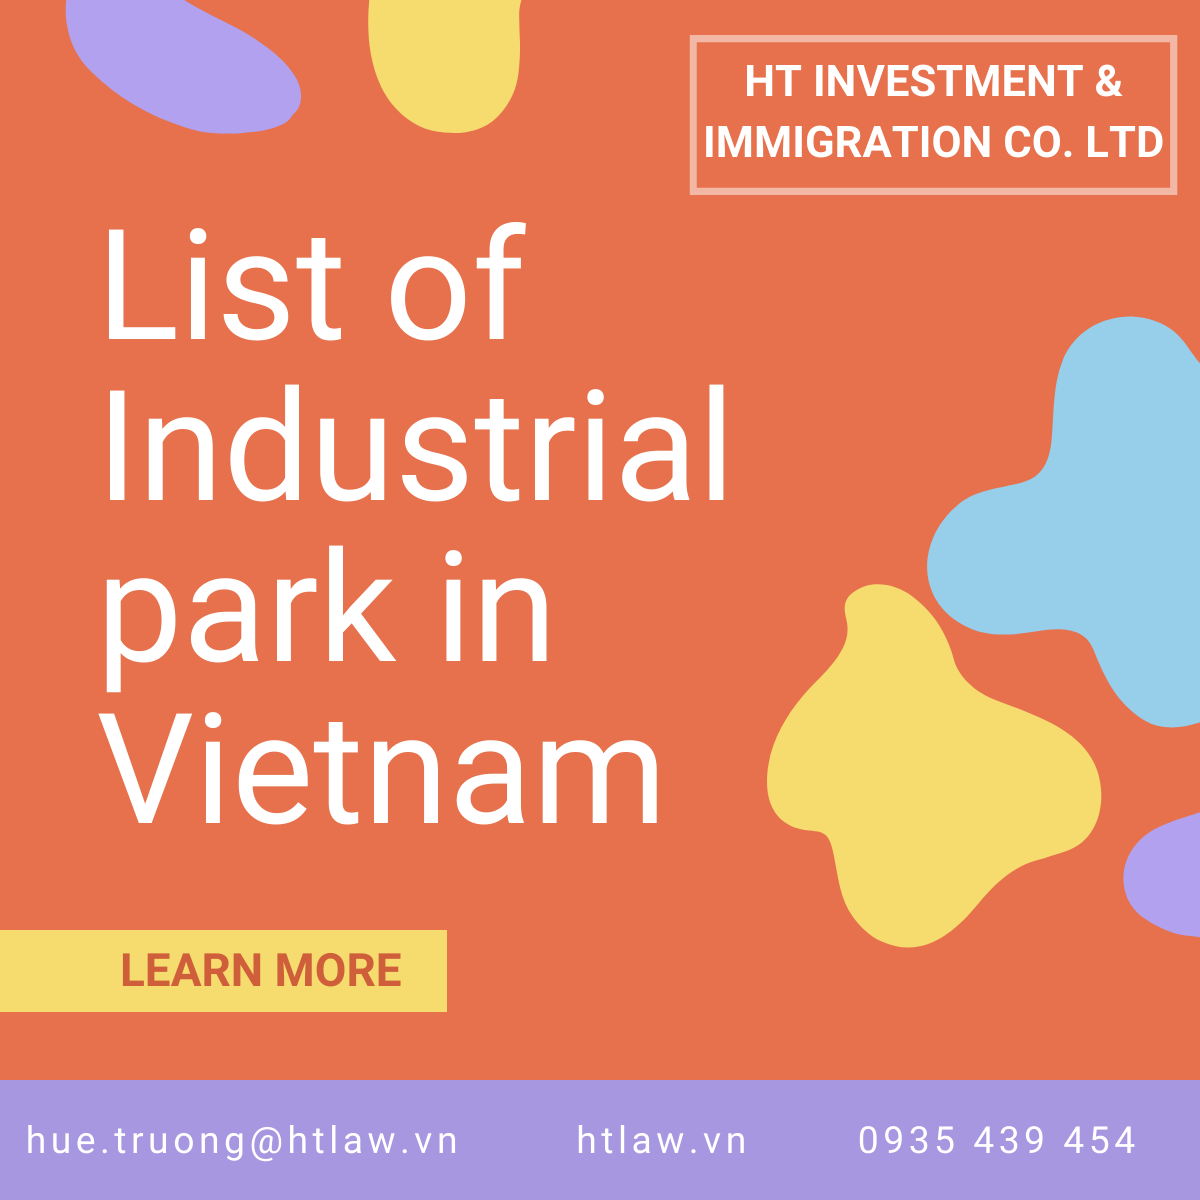 Industrial Park in Vietnam - HTlaw